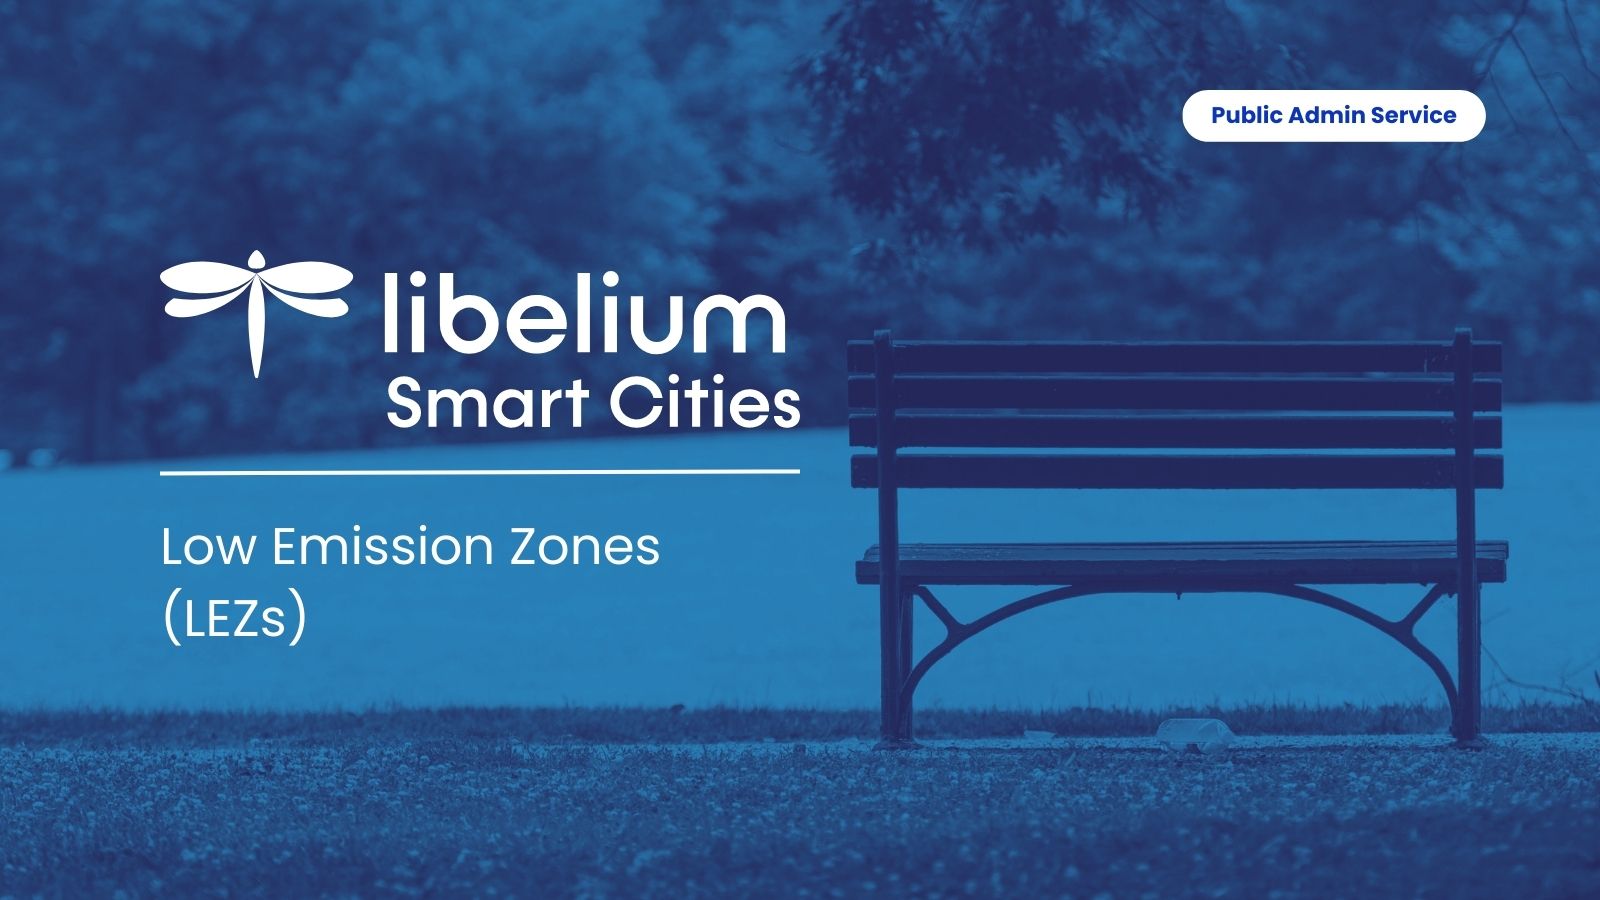 LEZ libelium - iot for public administration